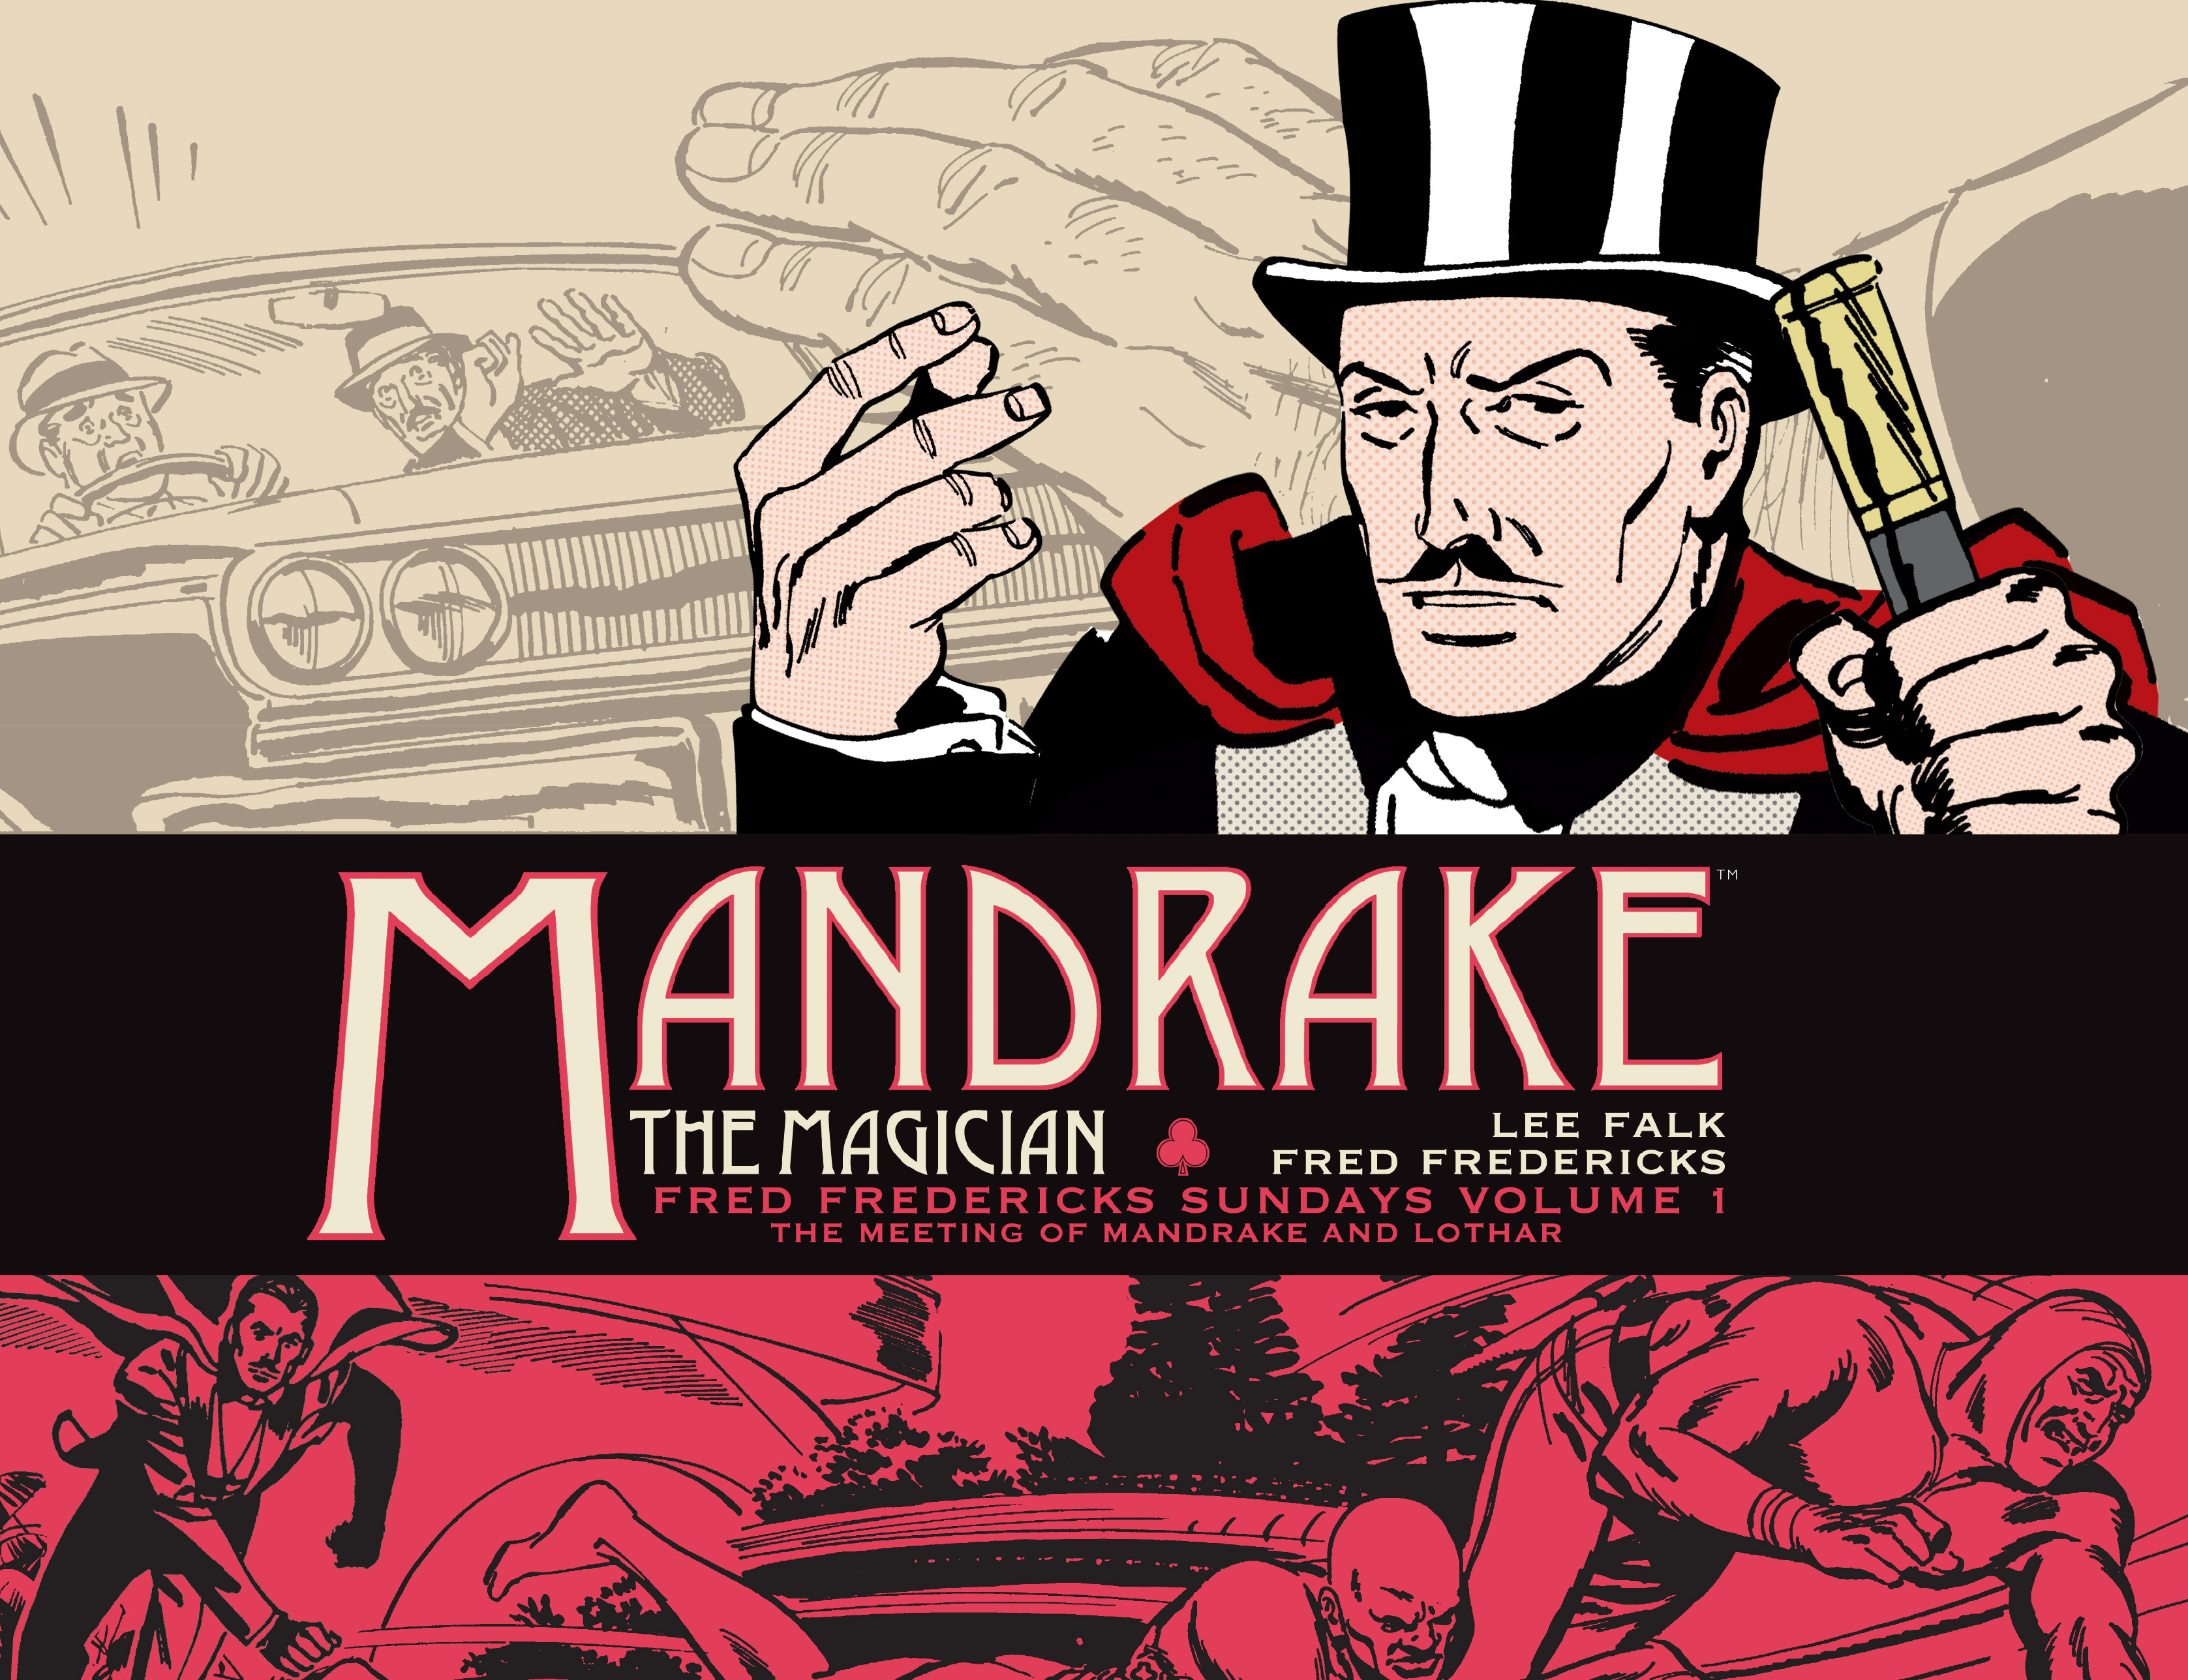 Mandrake the magician comics online